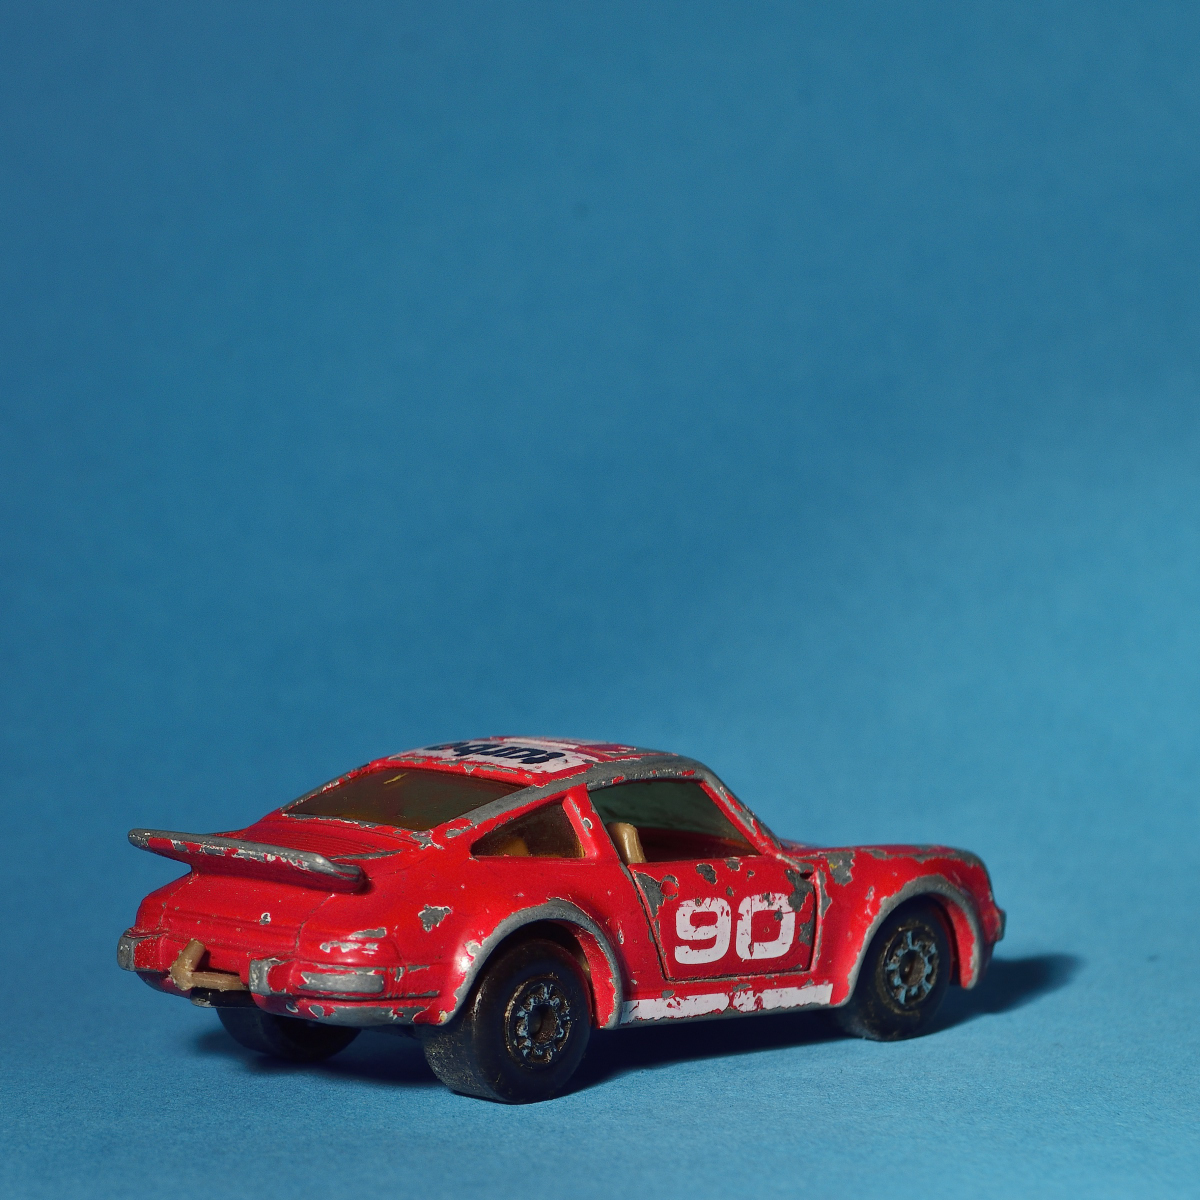 Porsche Turbo 1978, Matchbox Superfast, Tablefotografie eines alten Spielzeugautos.Aufnahme am 8.11.2020